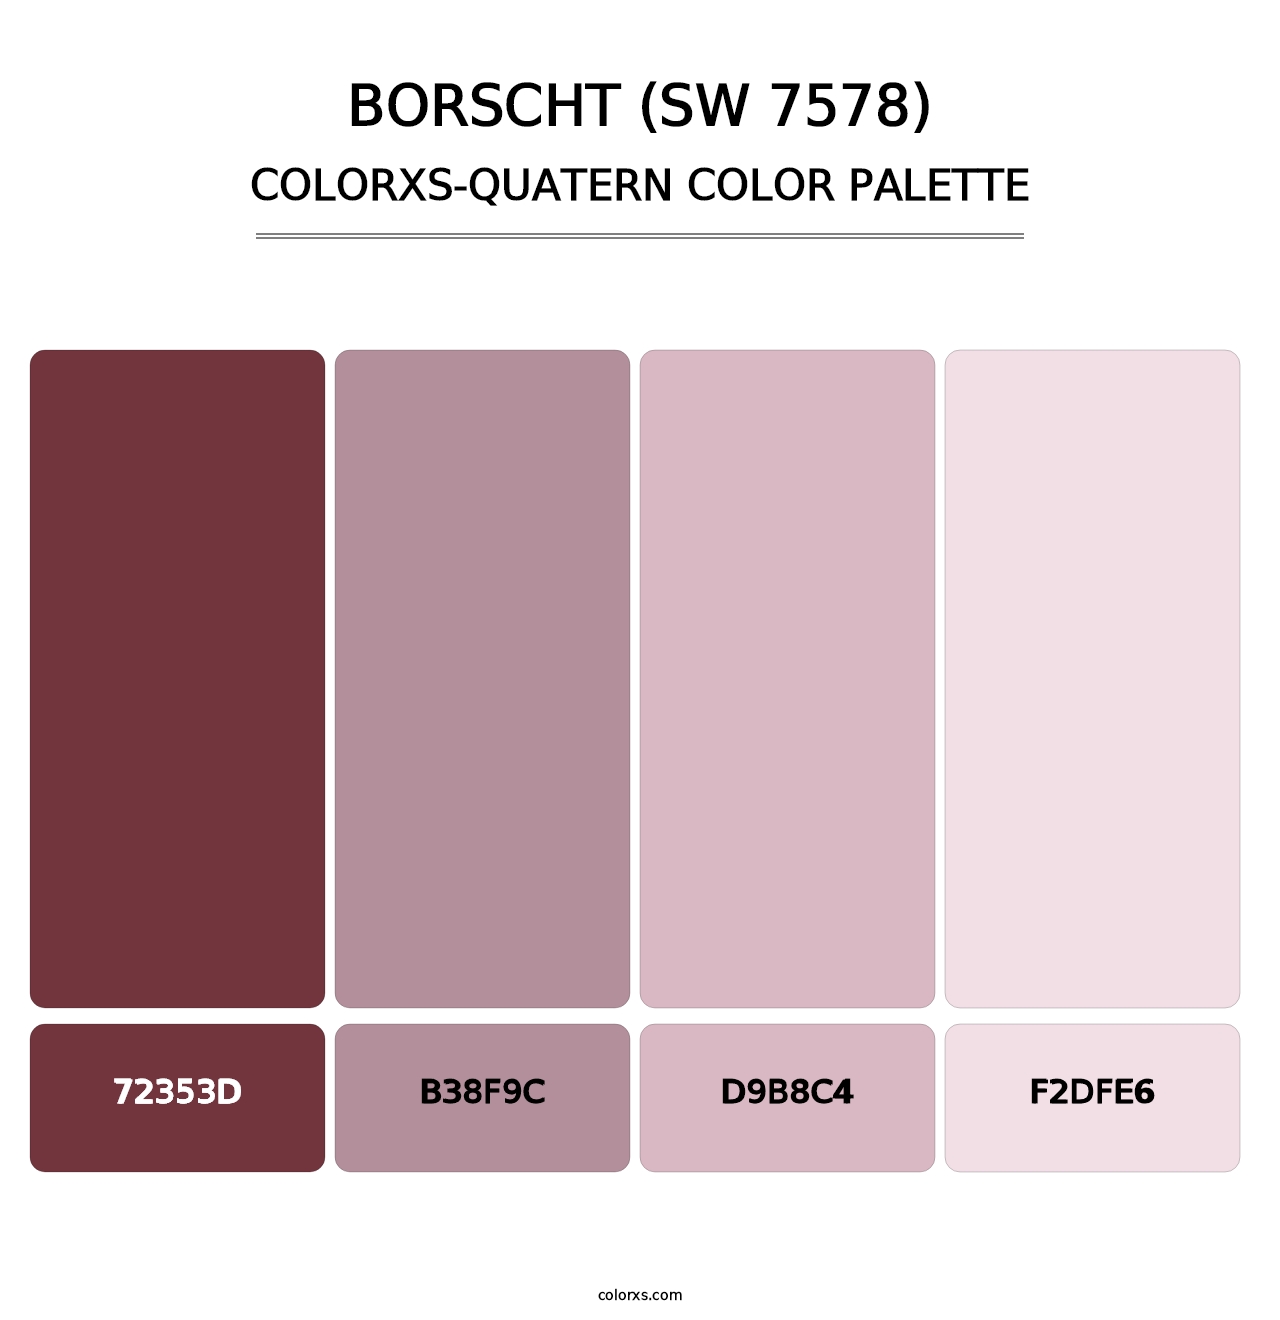 Borscht (SW 7578) - Colorxs Quatern Palette